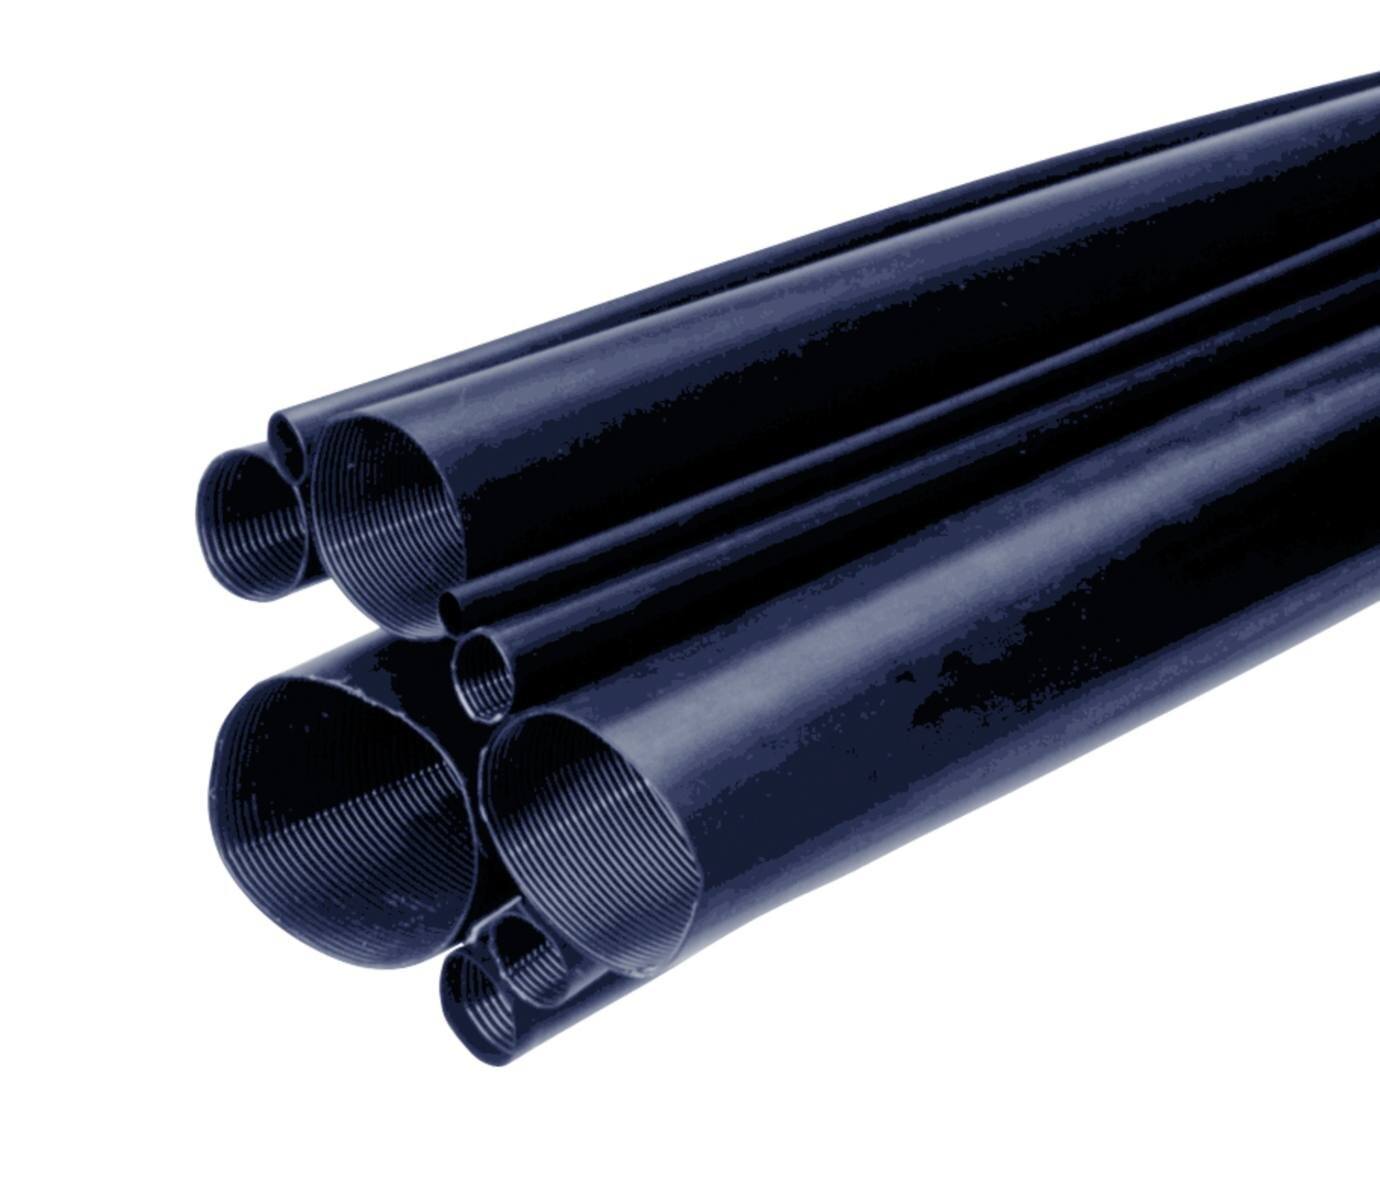 3M MDT-A Tubo termorretráctil de pared media con adhesivo, negro, 19/6 mm, 1 m